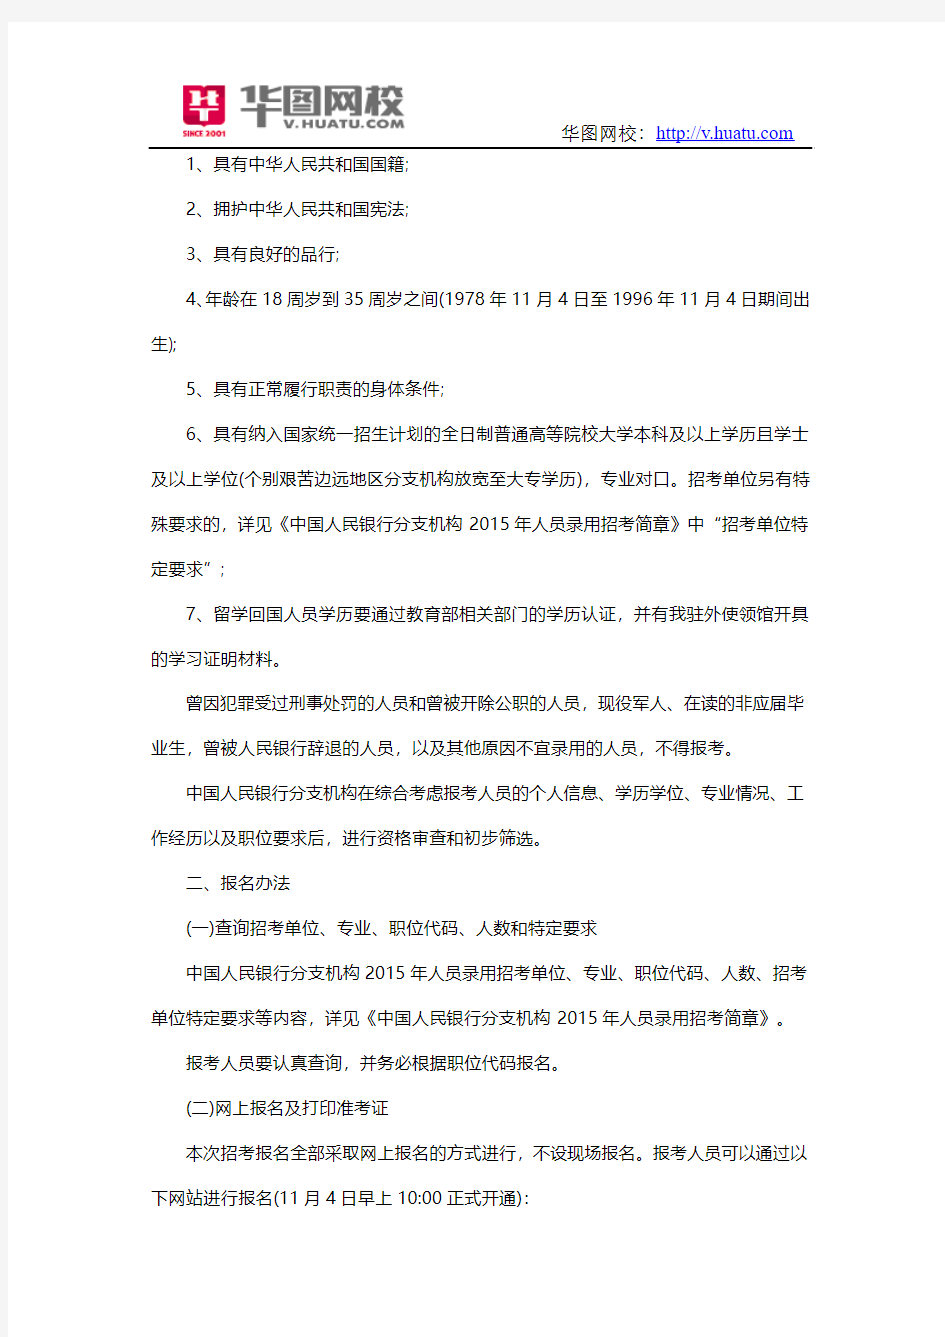 2015年中国人民银行分支机构及直属招聘公告